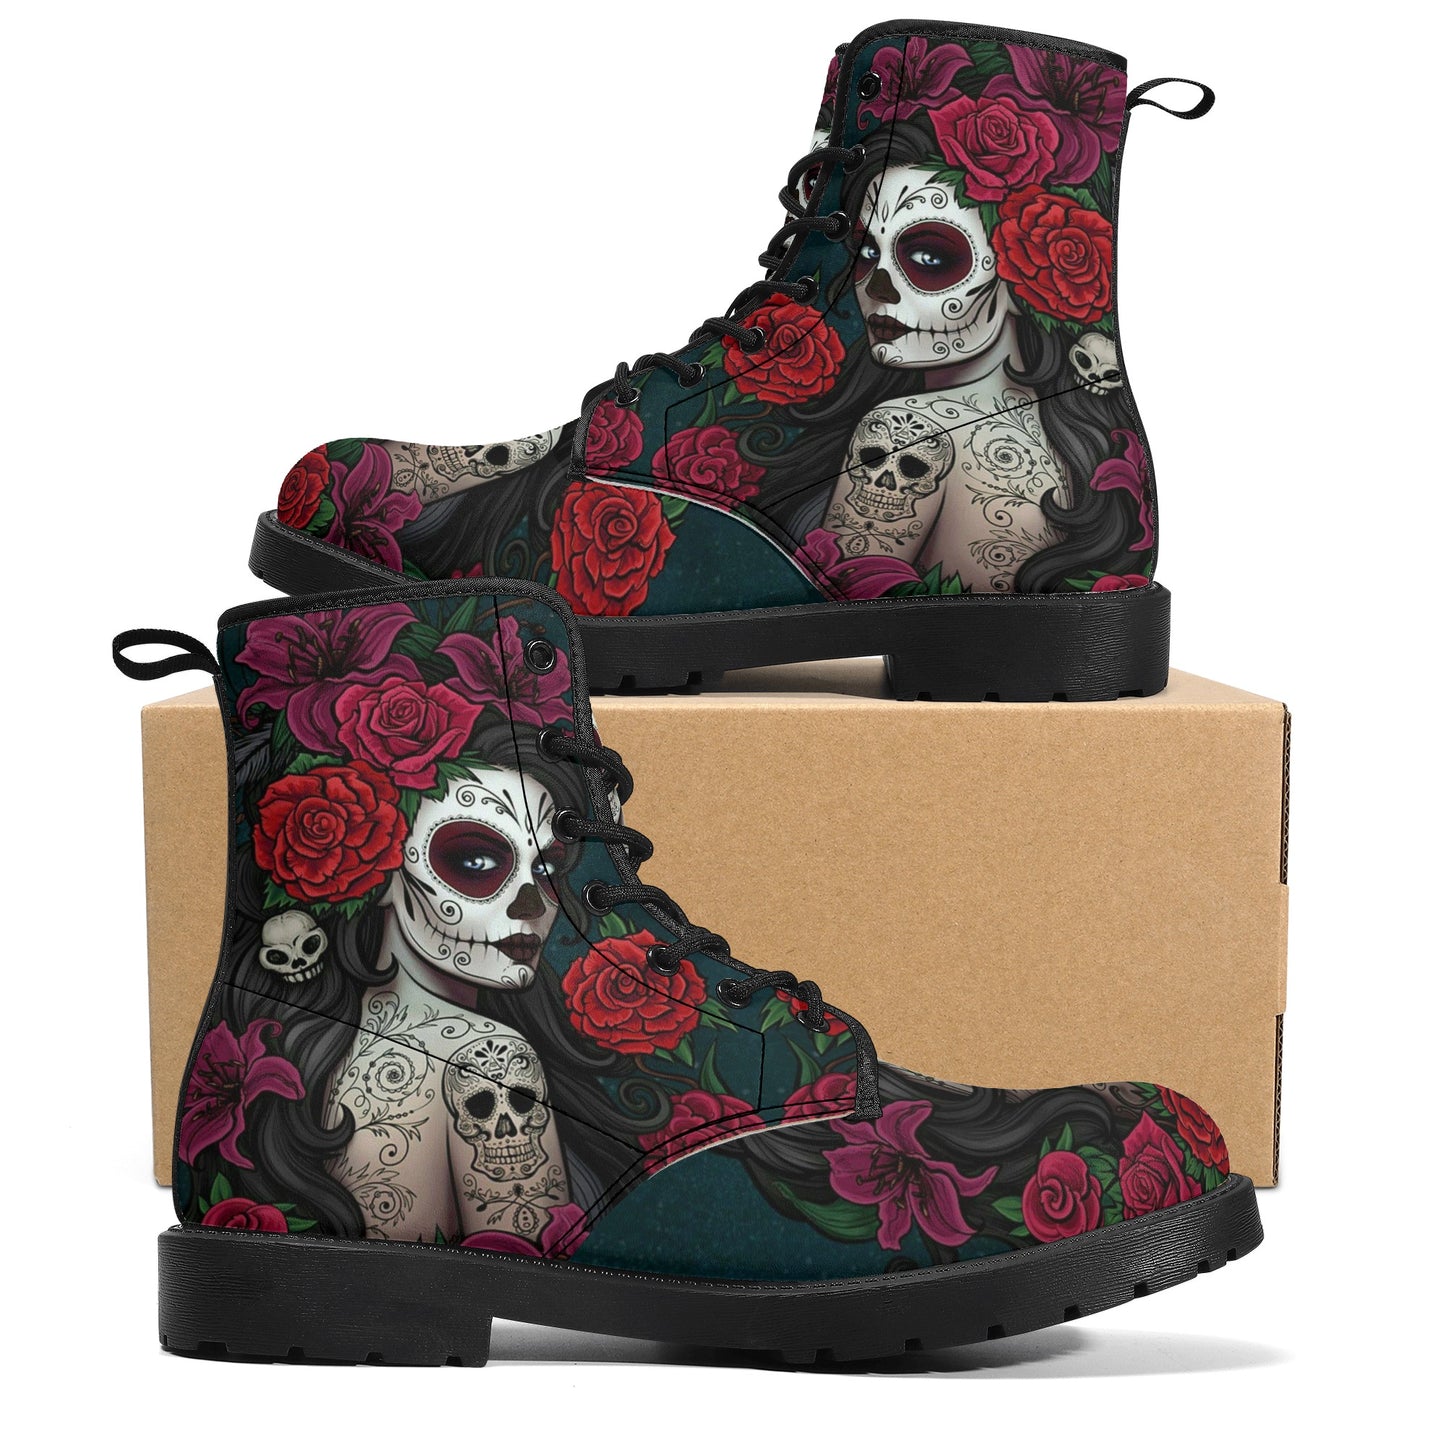 Sugar skull winter boots, sugar skull girl combat boots, cinco de mayo skull boots for men women, floral sugar skull men women shoes, sugar